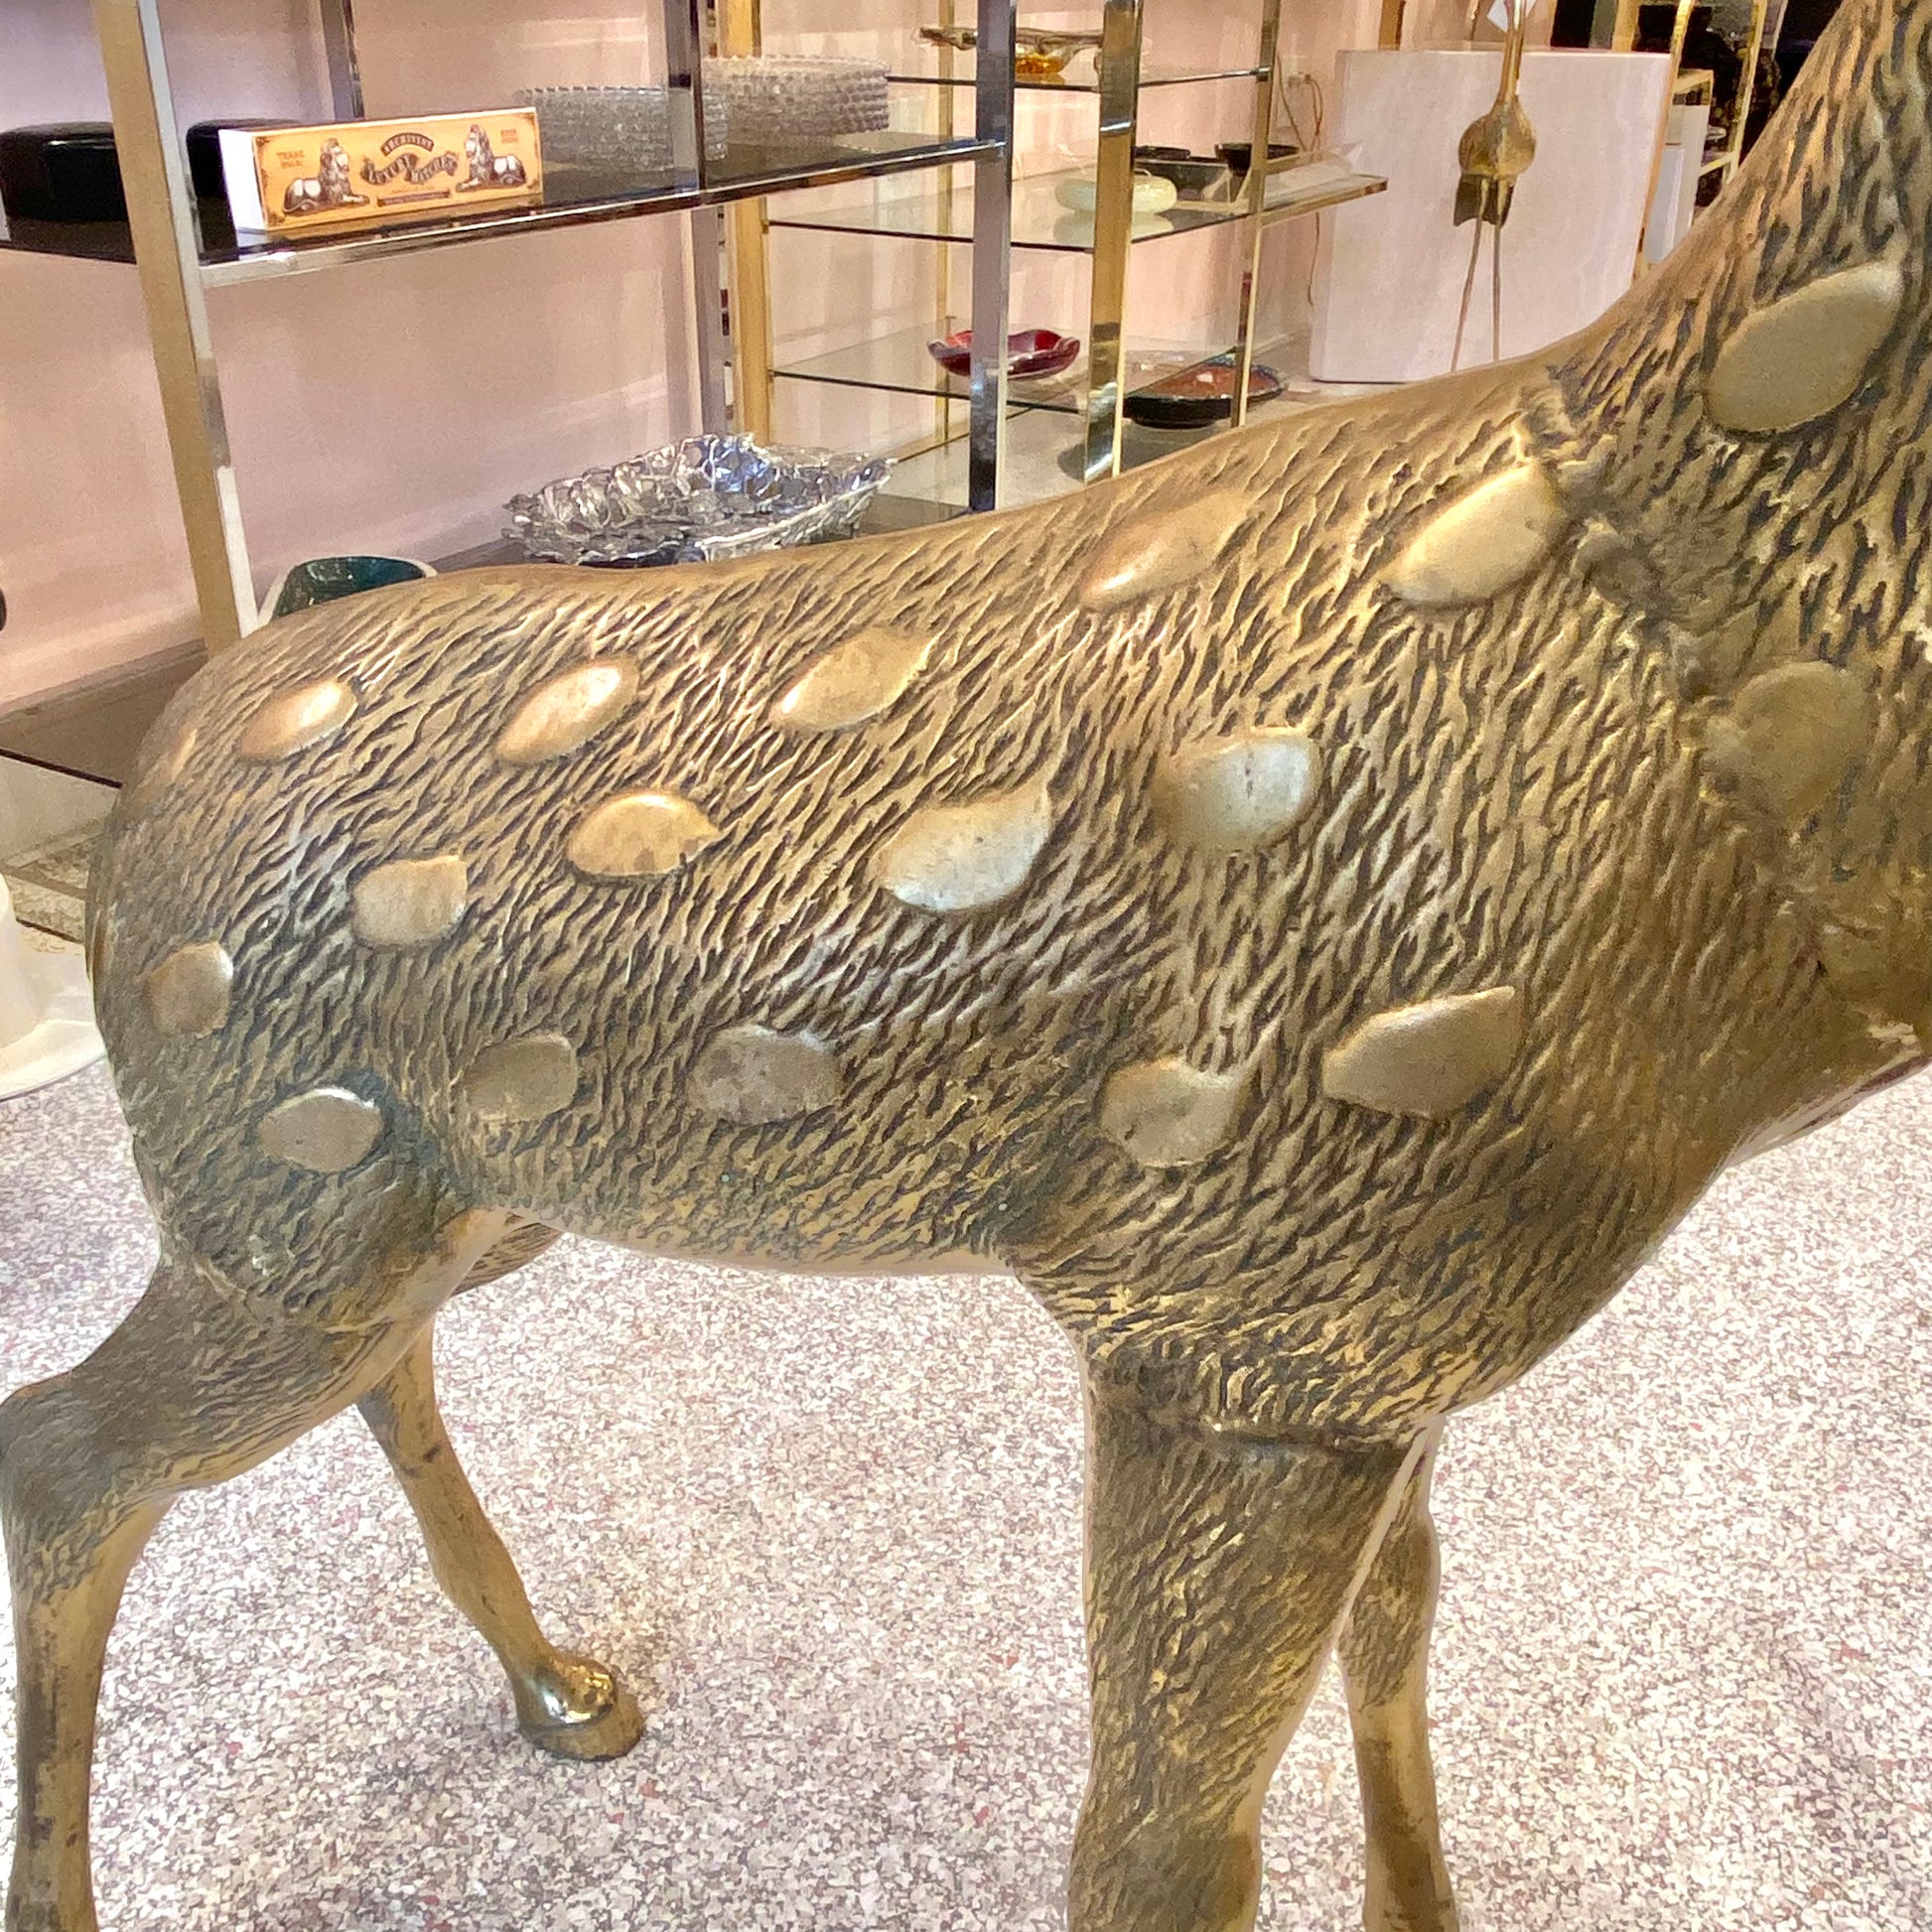 22 LARGE Vintage Brass Deer Statue Antique Gold Metal Deer With